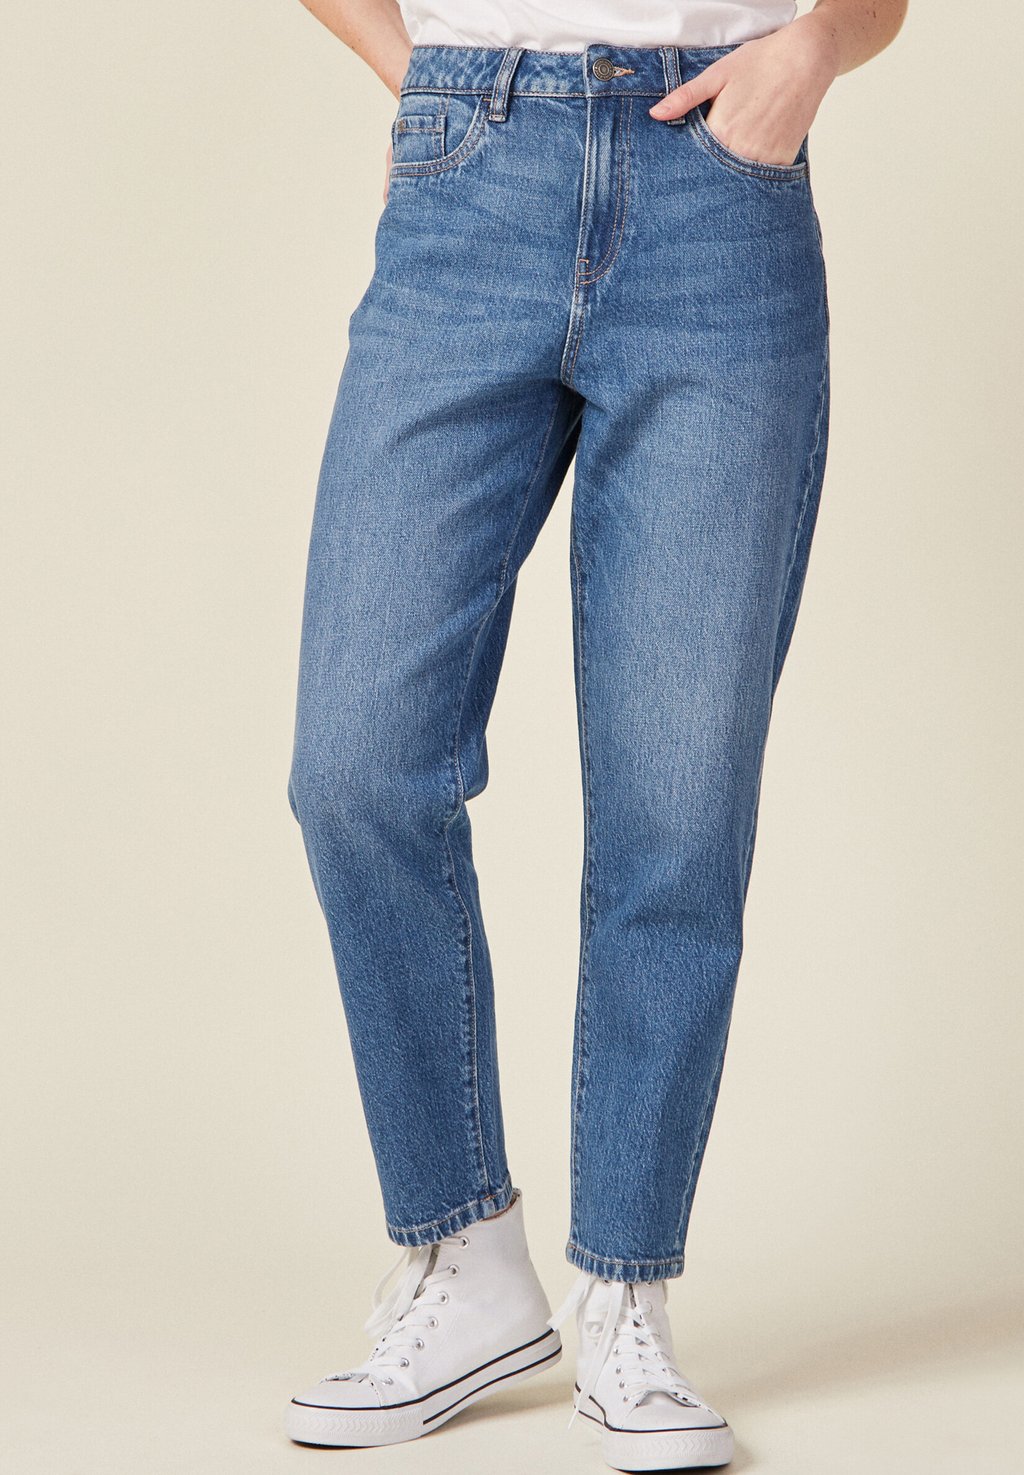 Джинсы прямые MOM-7/8 BONOBO Jeans, каменно-синий деним джинсы прямые bonobo jeans цвет kaki